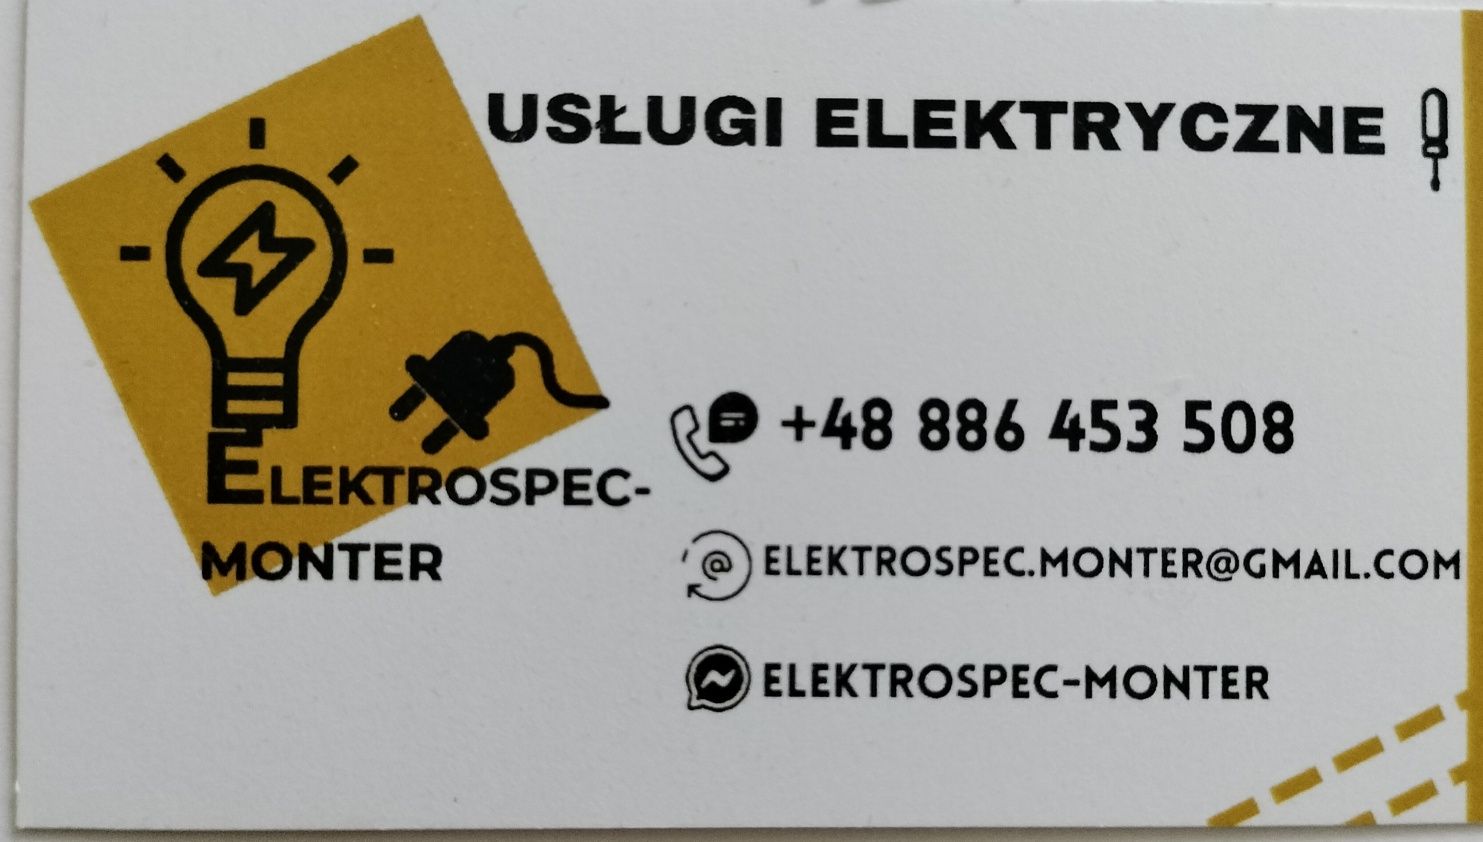 Elektryk - Monter Usługi elektryczne